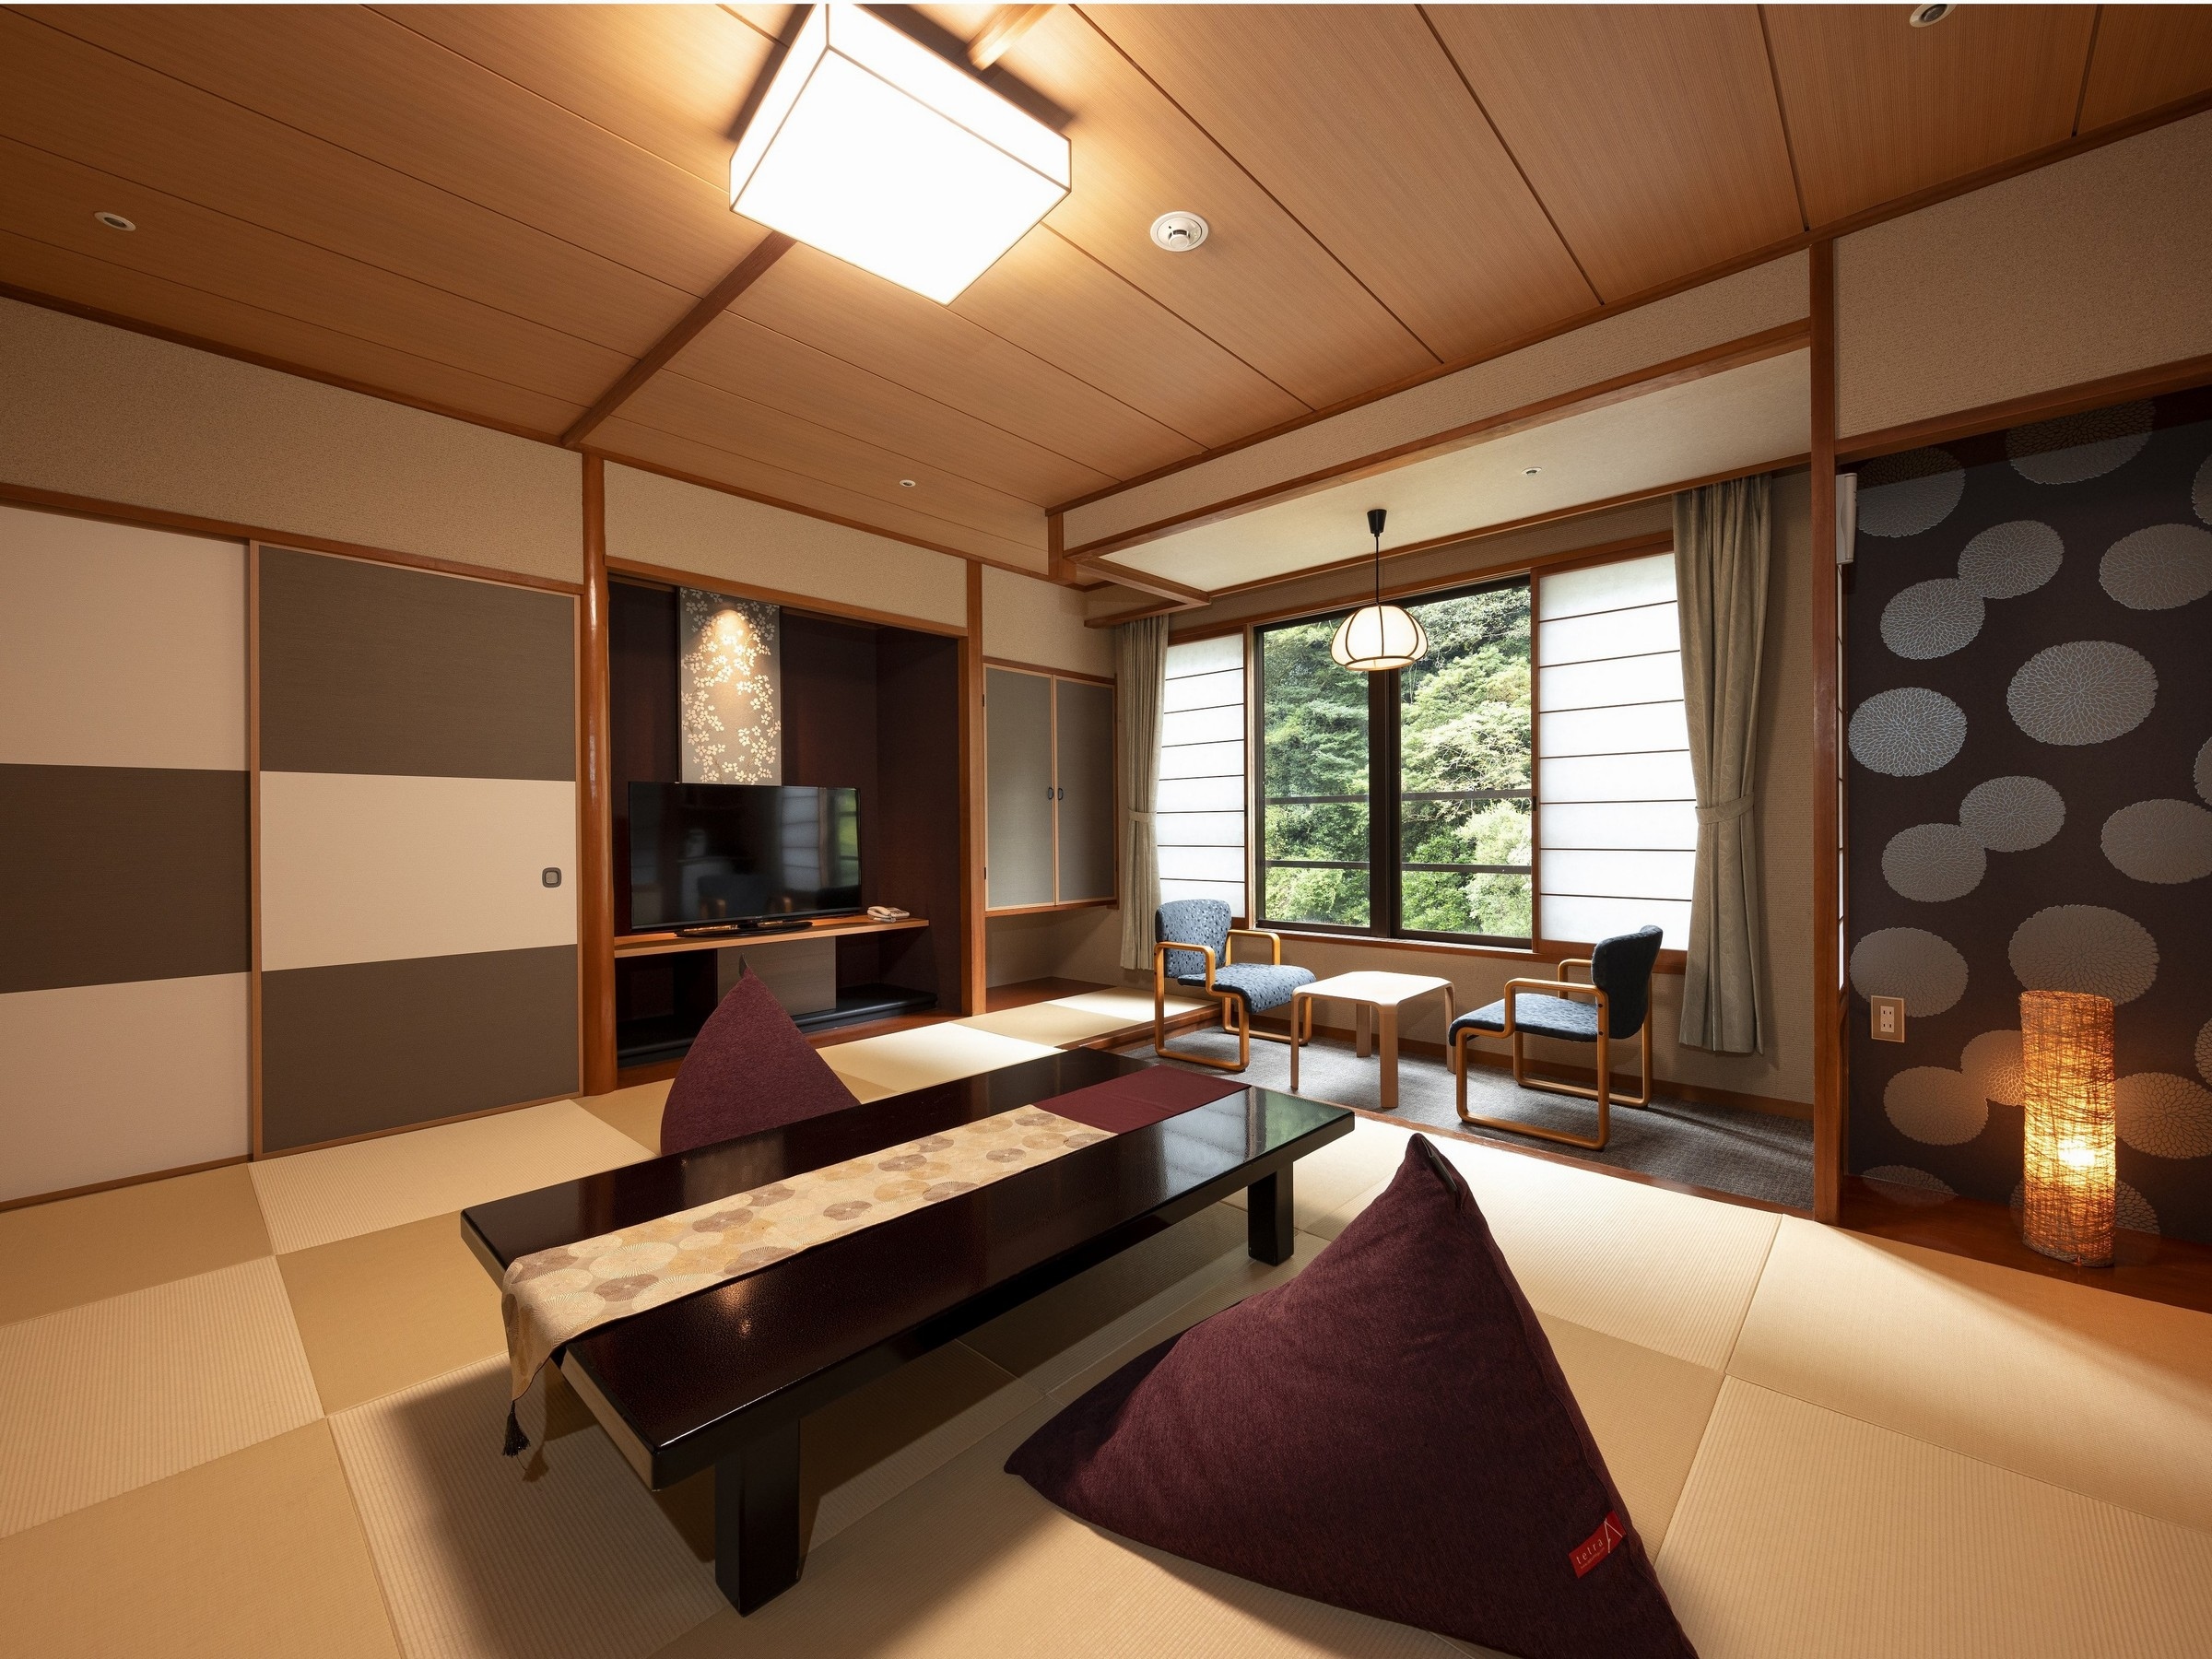 [更新日式房间的例子] 一个新的日式房间，您可以在蓬松的珠垫和山间溪流的美丽中治愈。